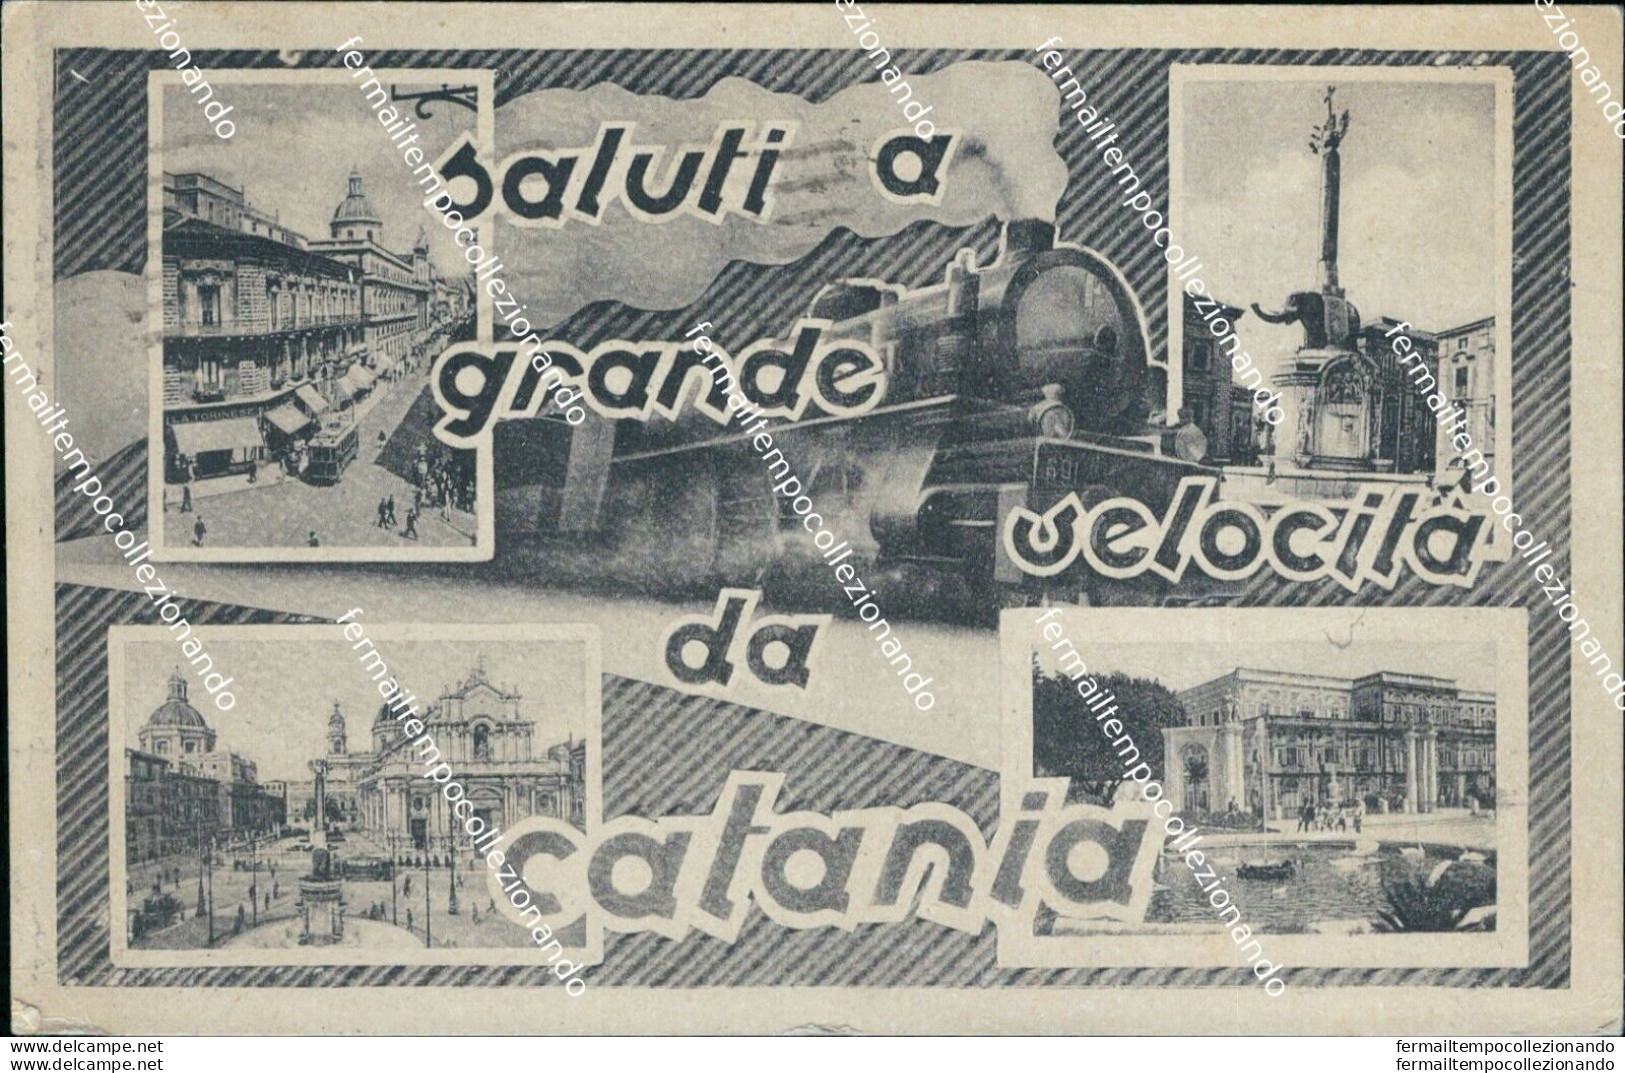 Bc142 Cartolina Saluti A Grande Velocita' Da Catania 1943 - Catania